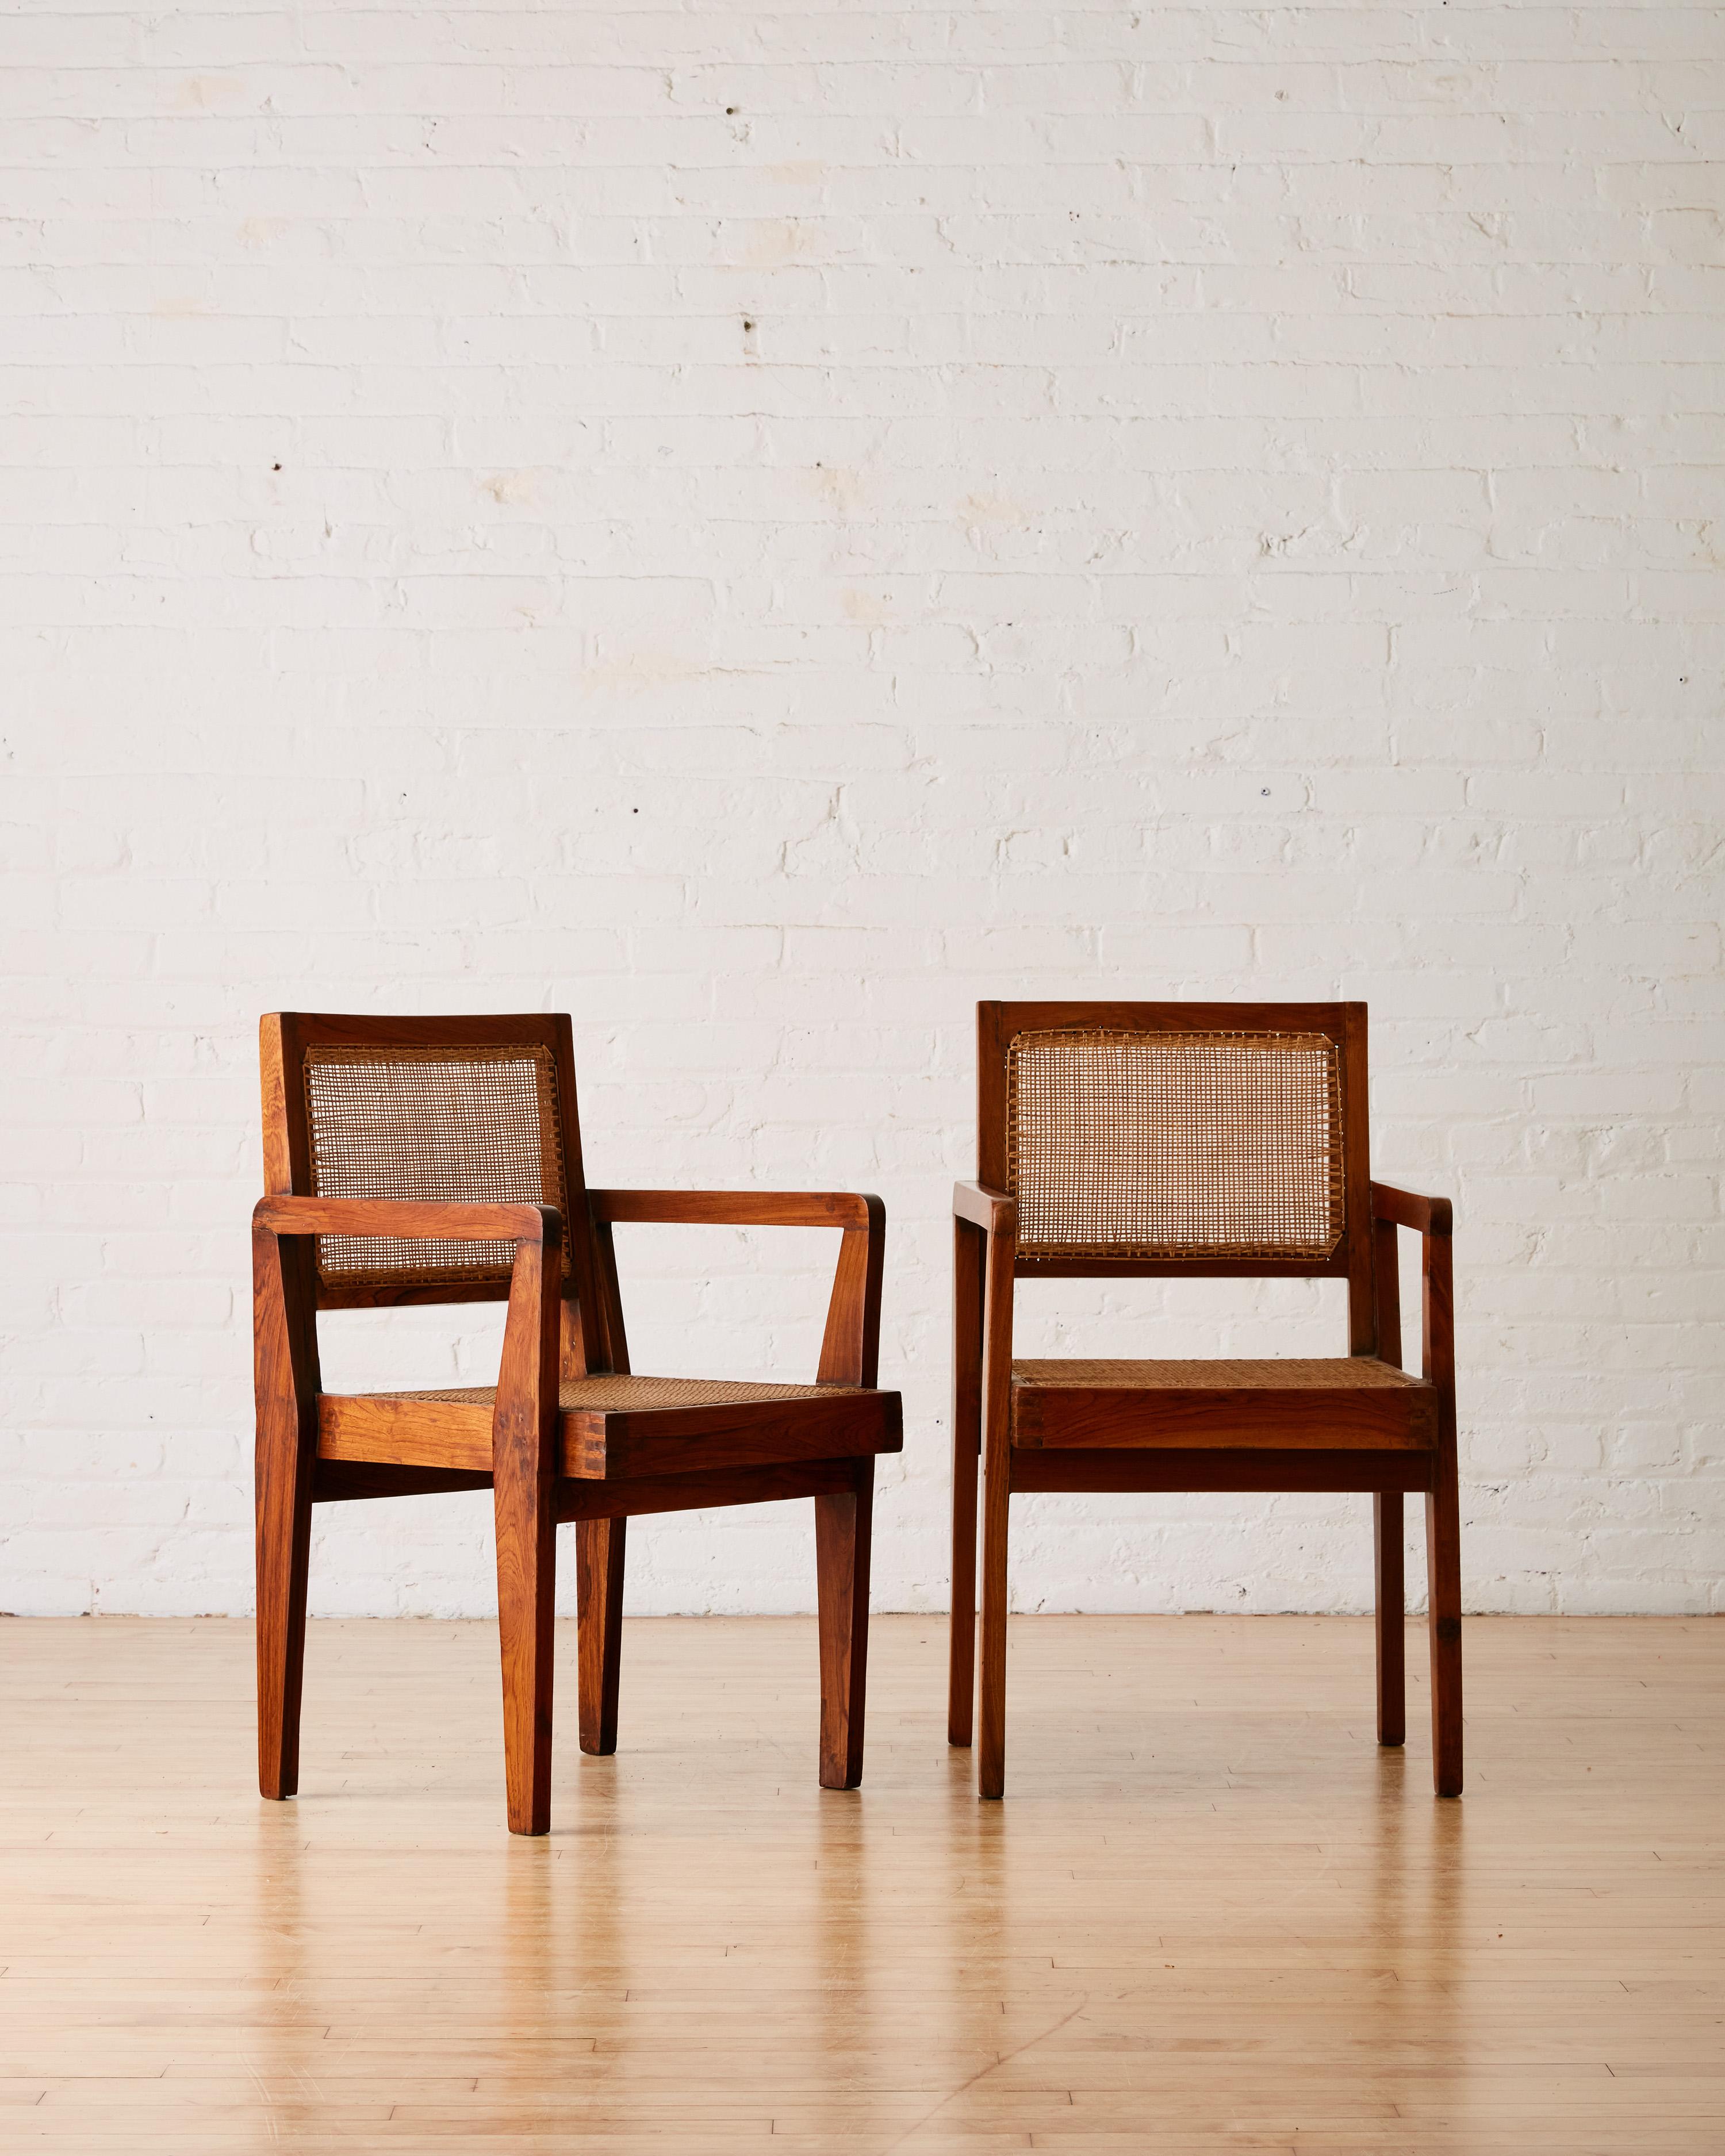 Ein Paar handgefertigte Take-Down-Stühle von Pierre Jeanneret mit massivem Teakholzrahmen, gefüllt mit dünnem Caning. 

Pierre Jeanneret war ein Schweizer Architekt und Möbeldesigner, der mit seinem Cousin Le Corbusier an der Gestaltung und Planung